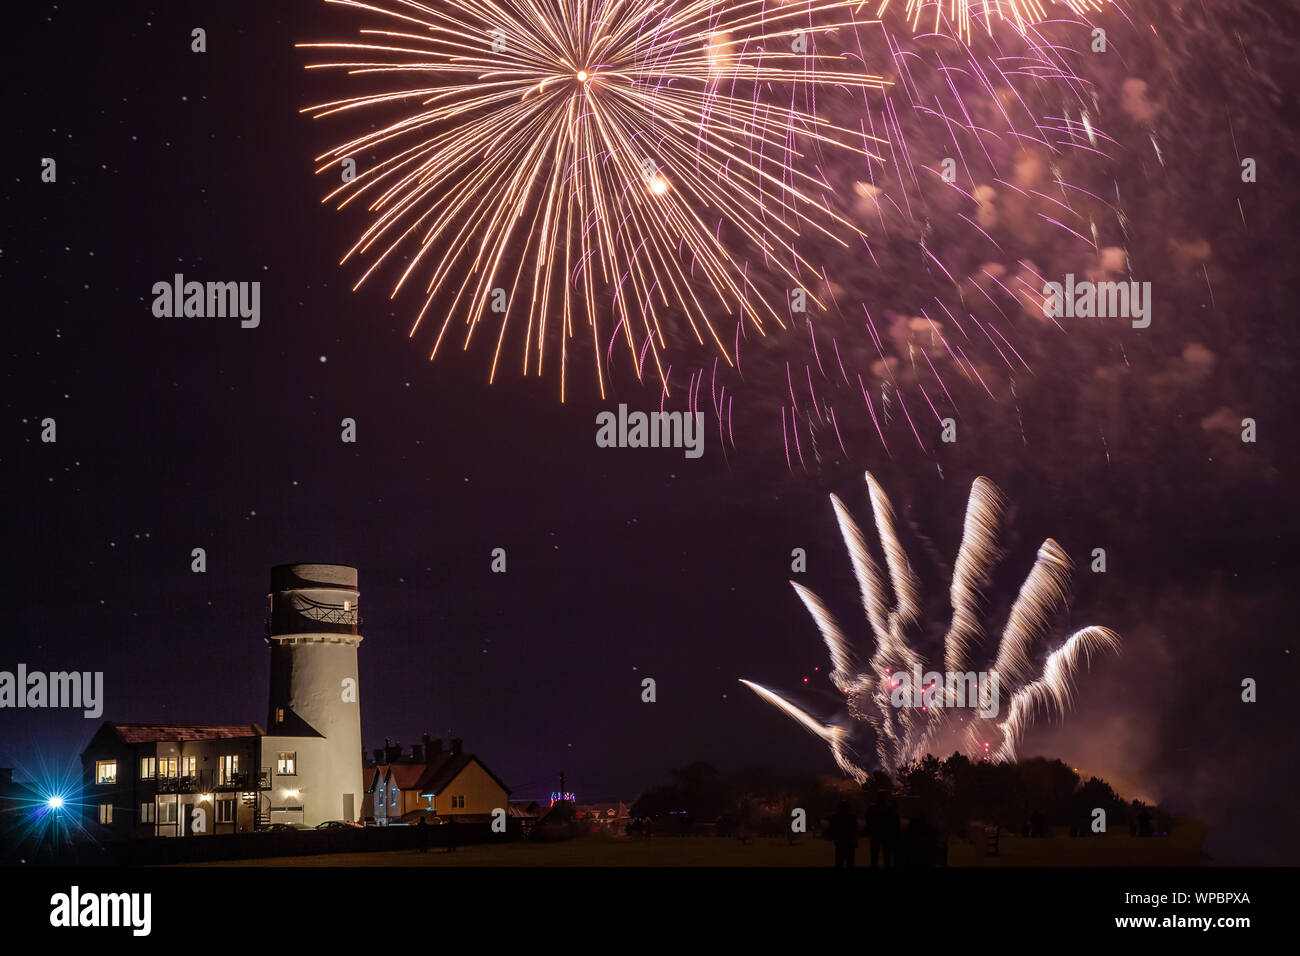 Celebrazione i fuochi d'artificio in NORFOLK REGNO UNITO su guyfawkes notte. Bella esplosione pirotecnica oltre il faro Foto Stock